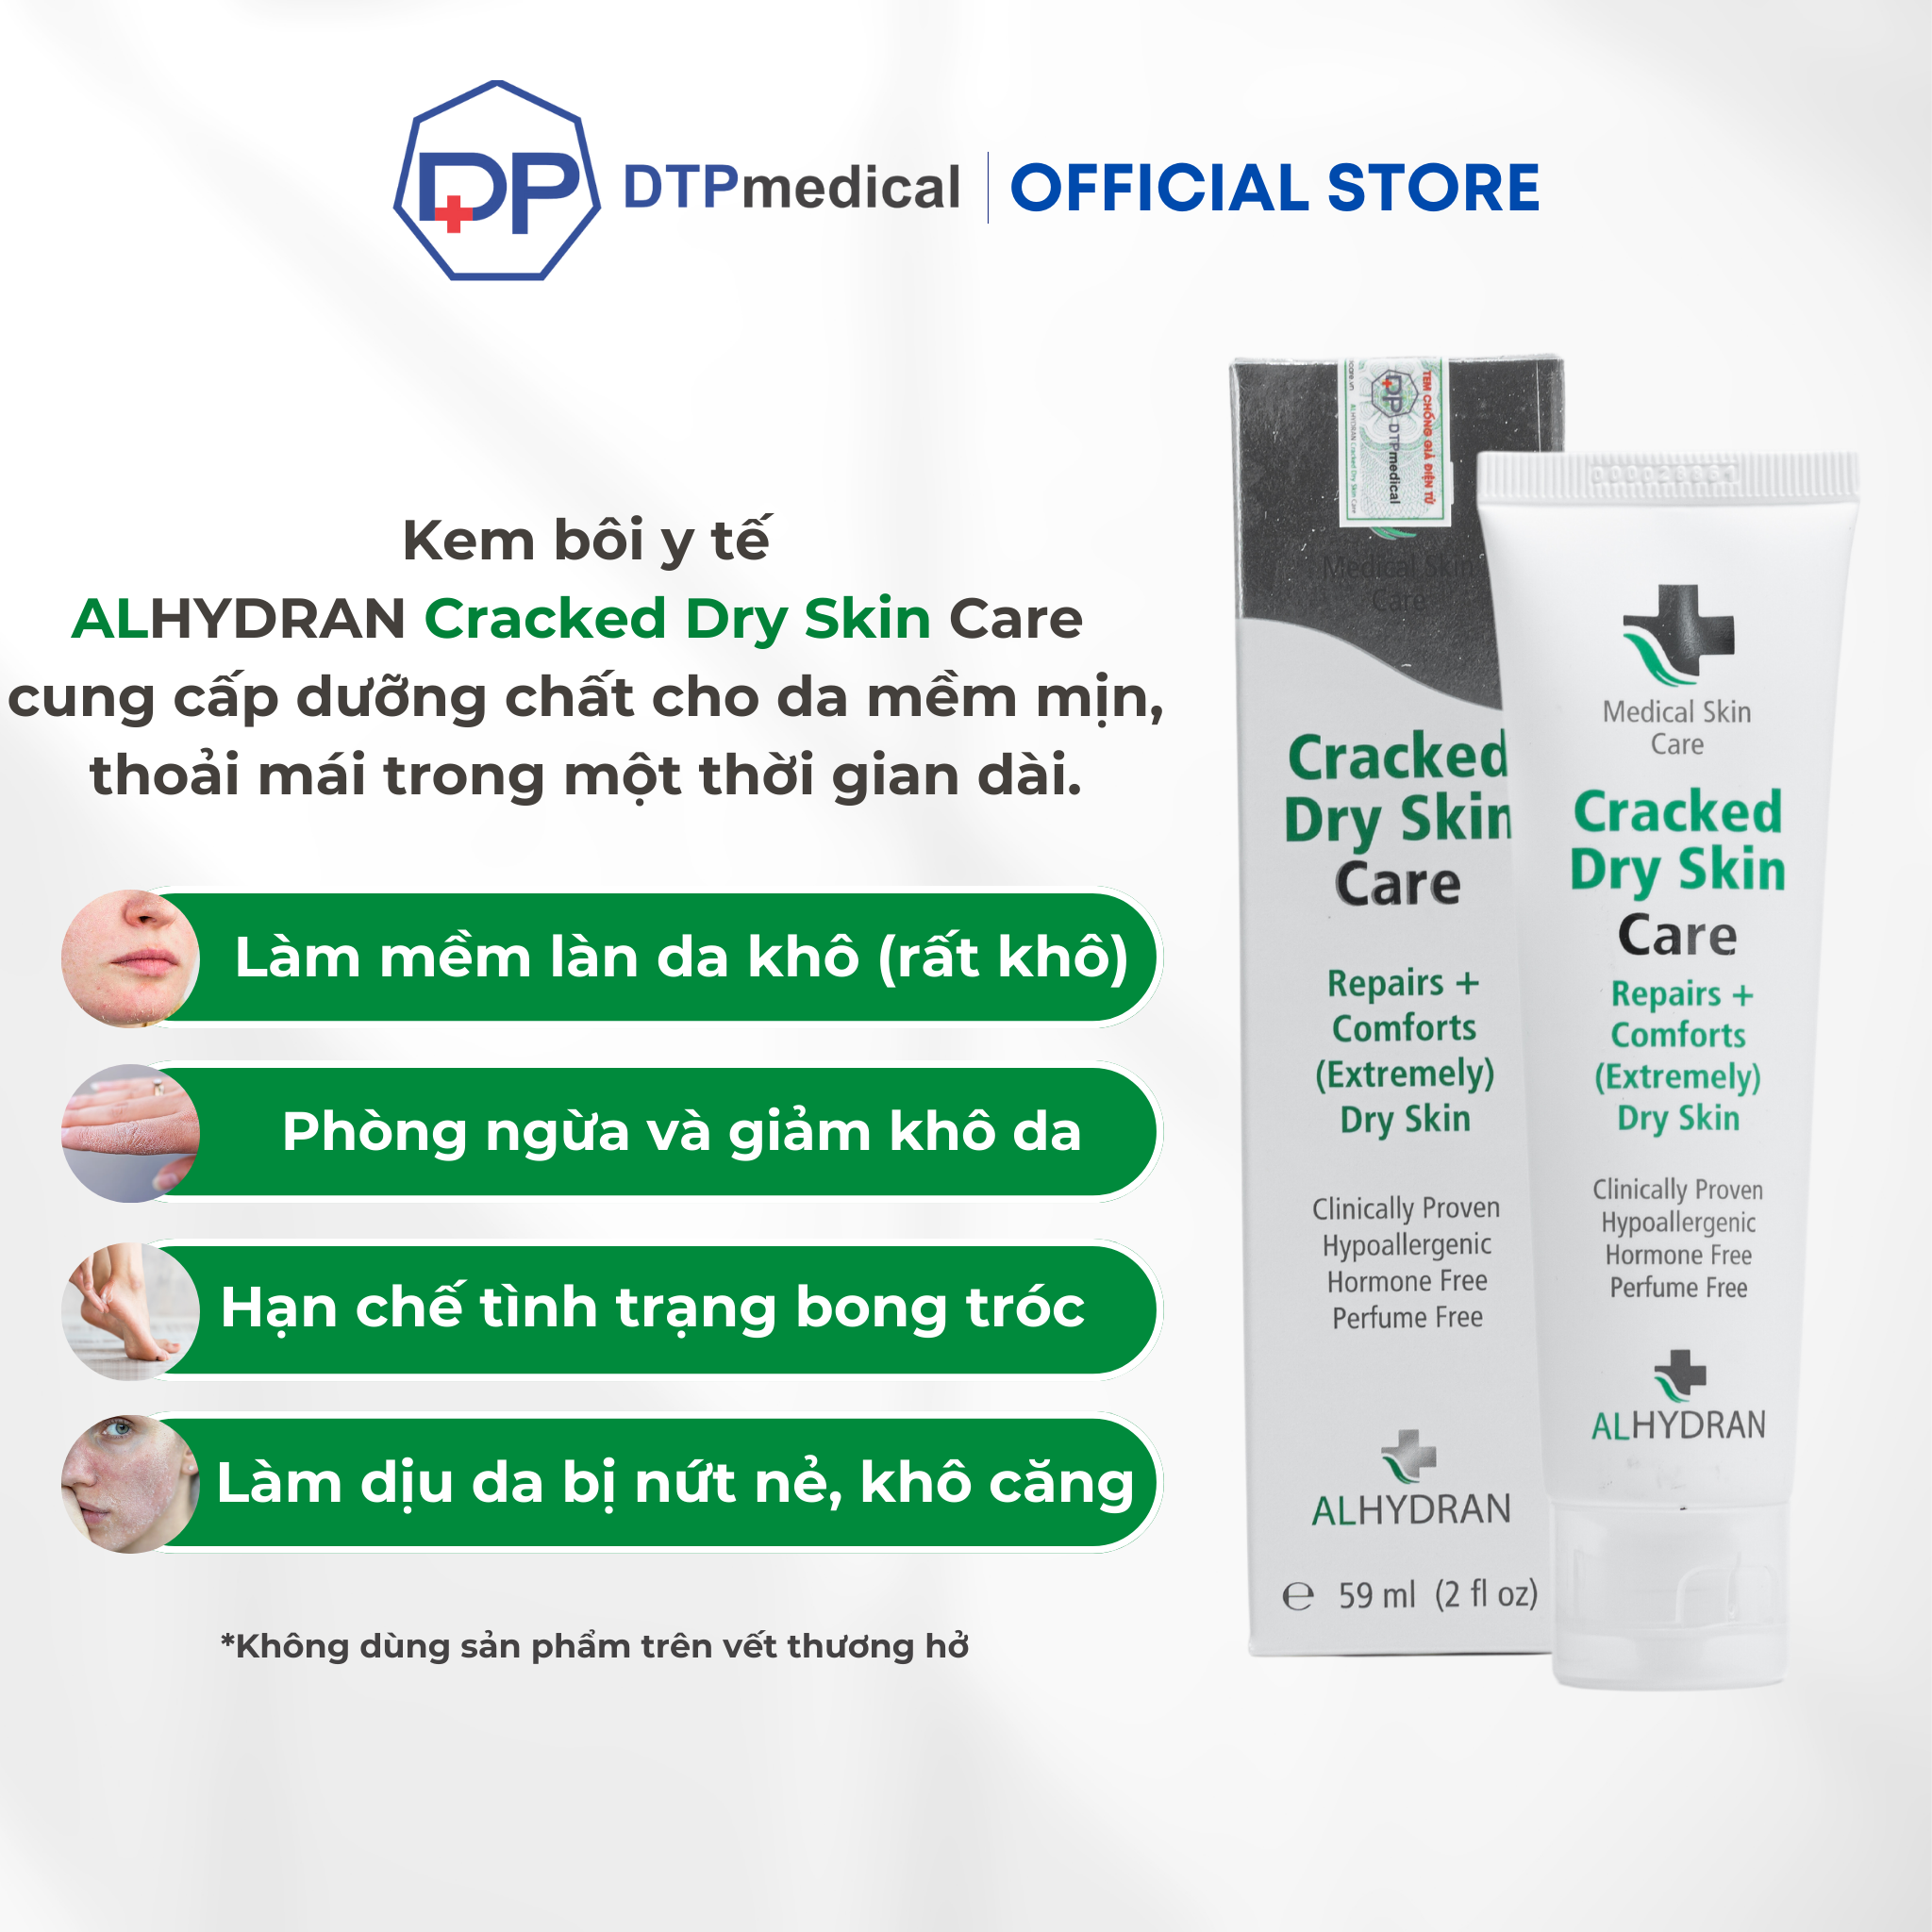 Kem bôi y tế ALHYDRAN Cracked Dry Skin Care phục hồi và làm dịu da bị khô nứt, cung cấp dưỡng chất ngay lập tức cho da